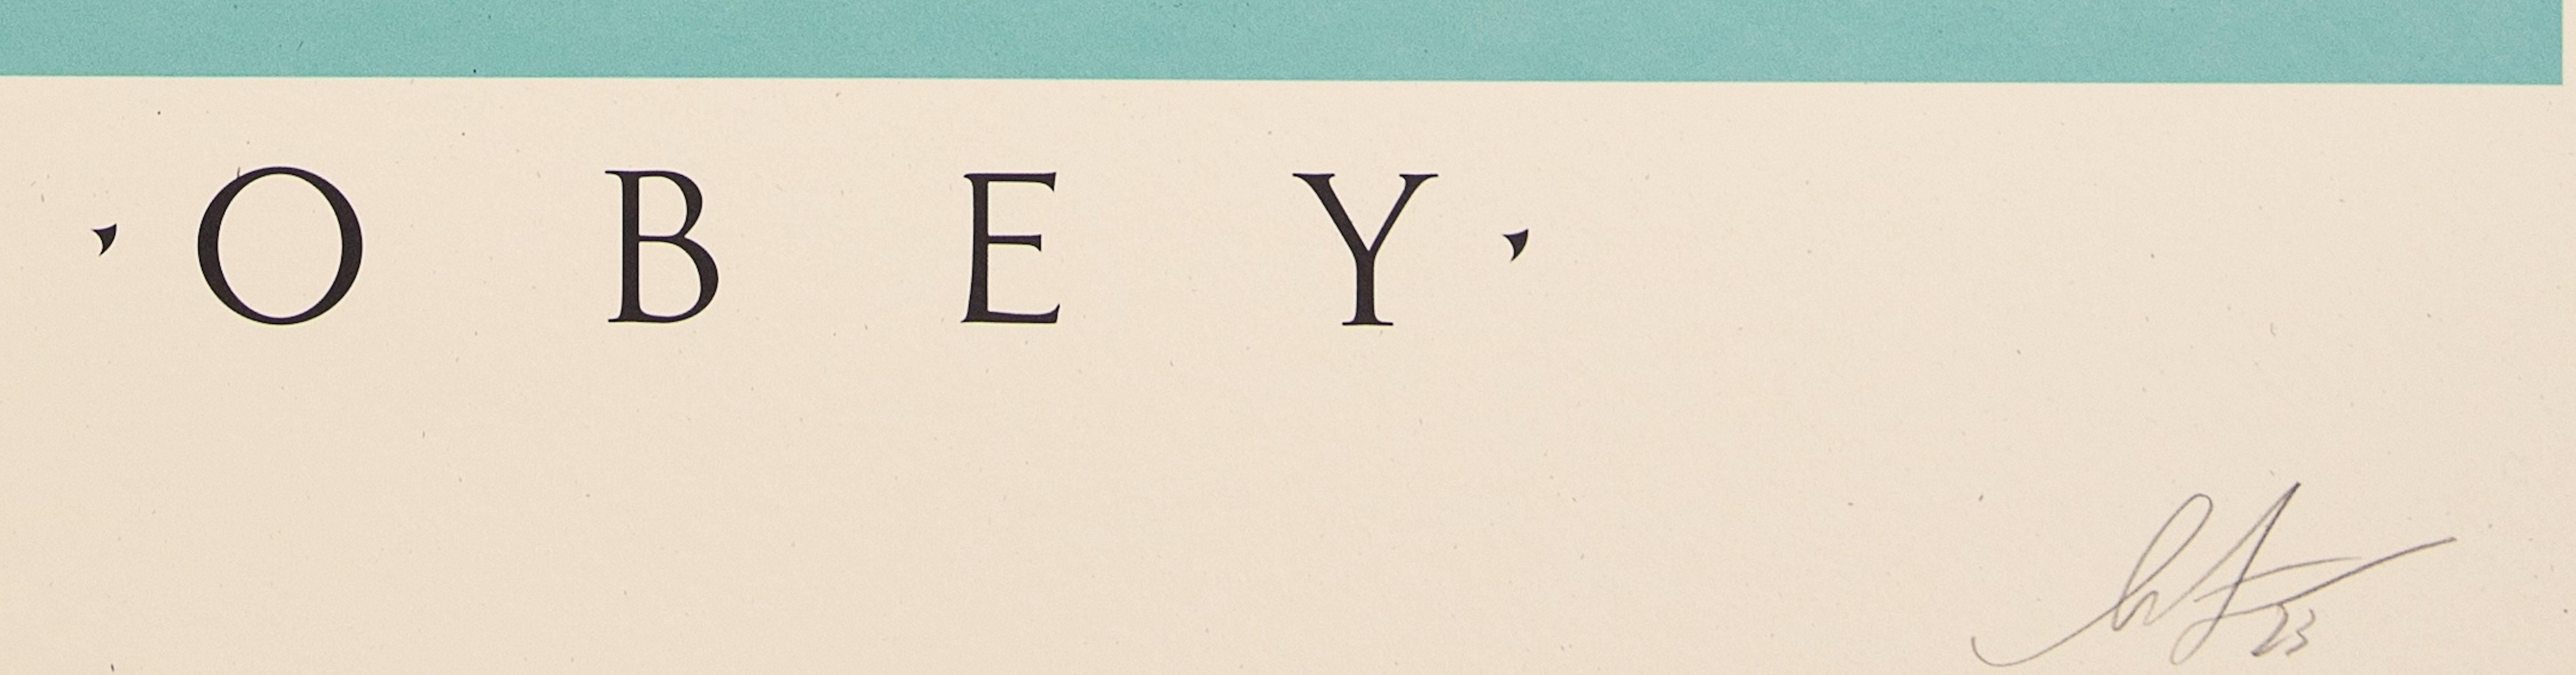 Shepard Fairey
Jeu d'ombres

Sérigraphie
Signé au crayon par l'artiste. 
Épreuve non numérotée
Taille 91 x 61 cm (c. 36 x 24 in)

Excellent état